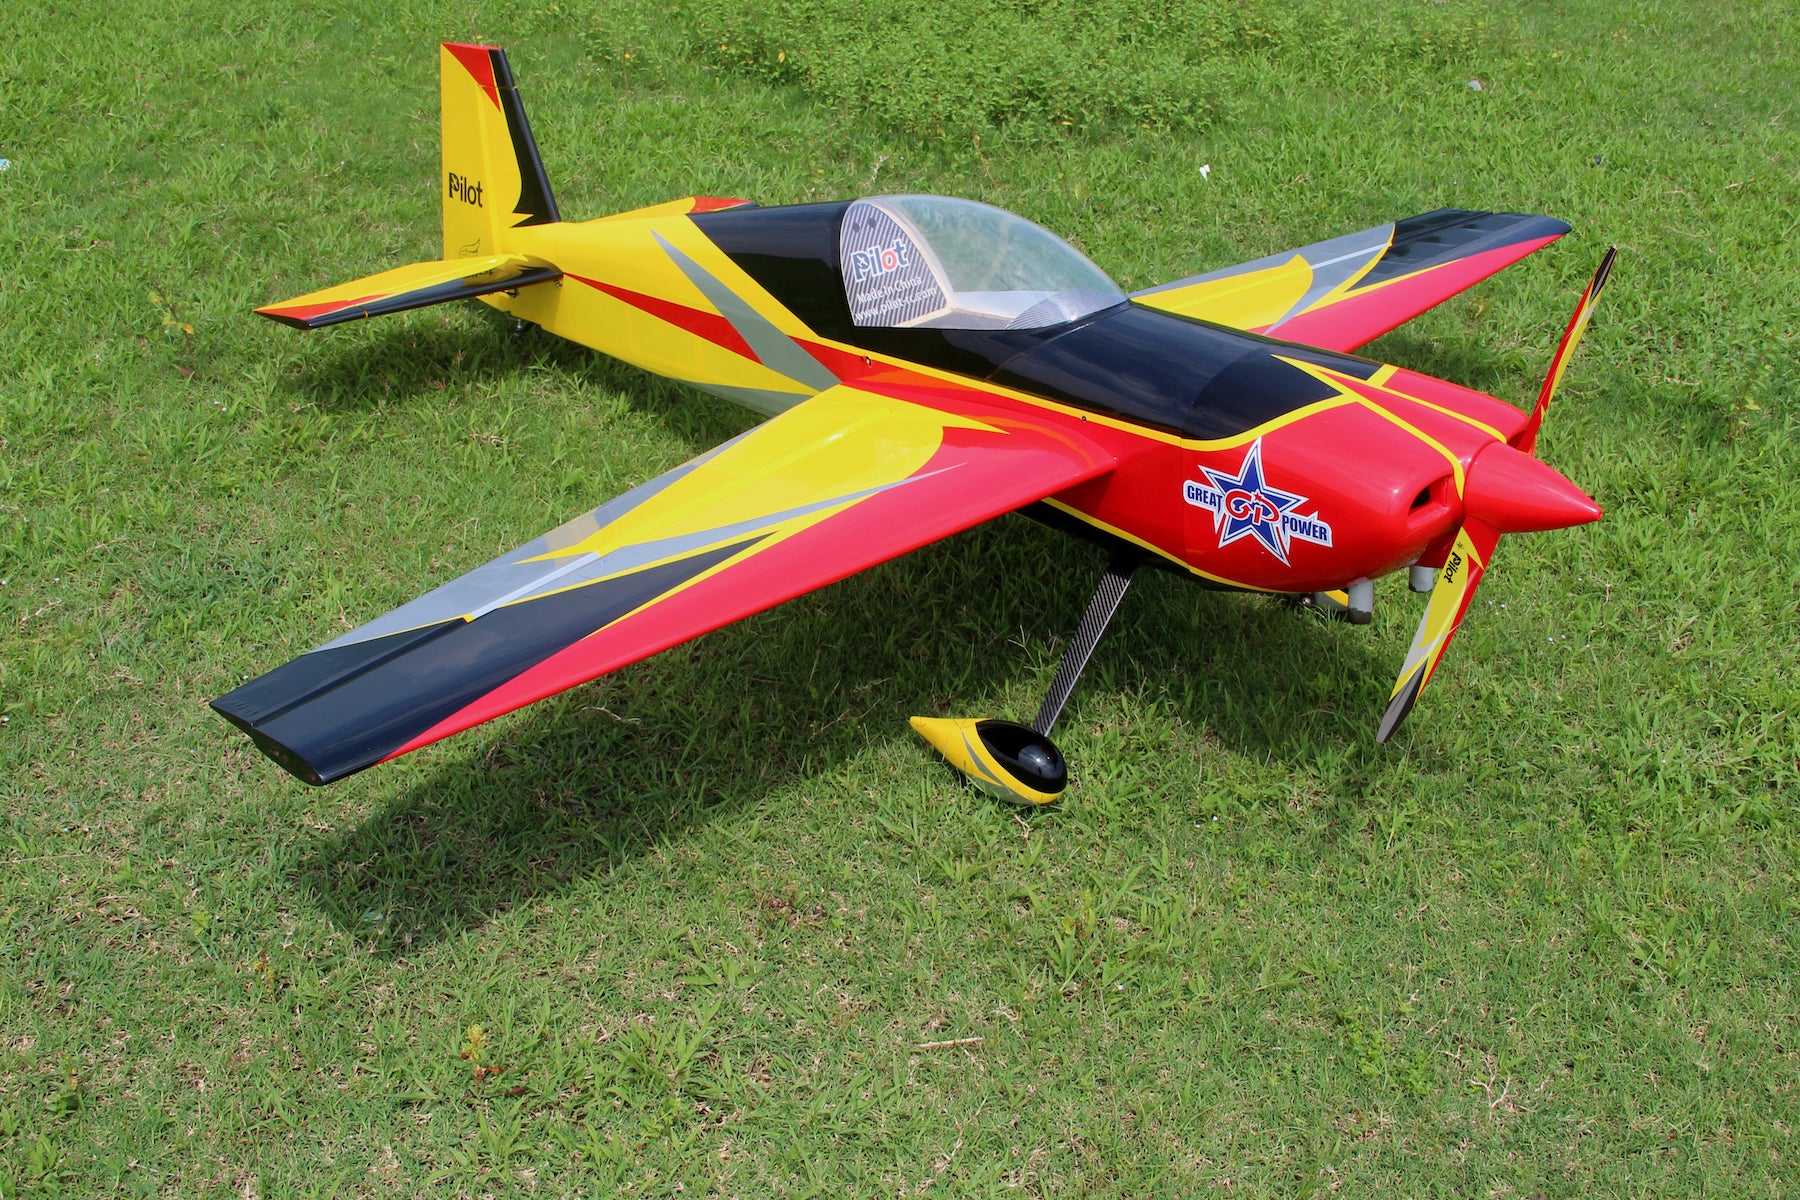 Pilot RC Slick 74In (Cf) Red/Yellow/Black (01) PIL661